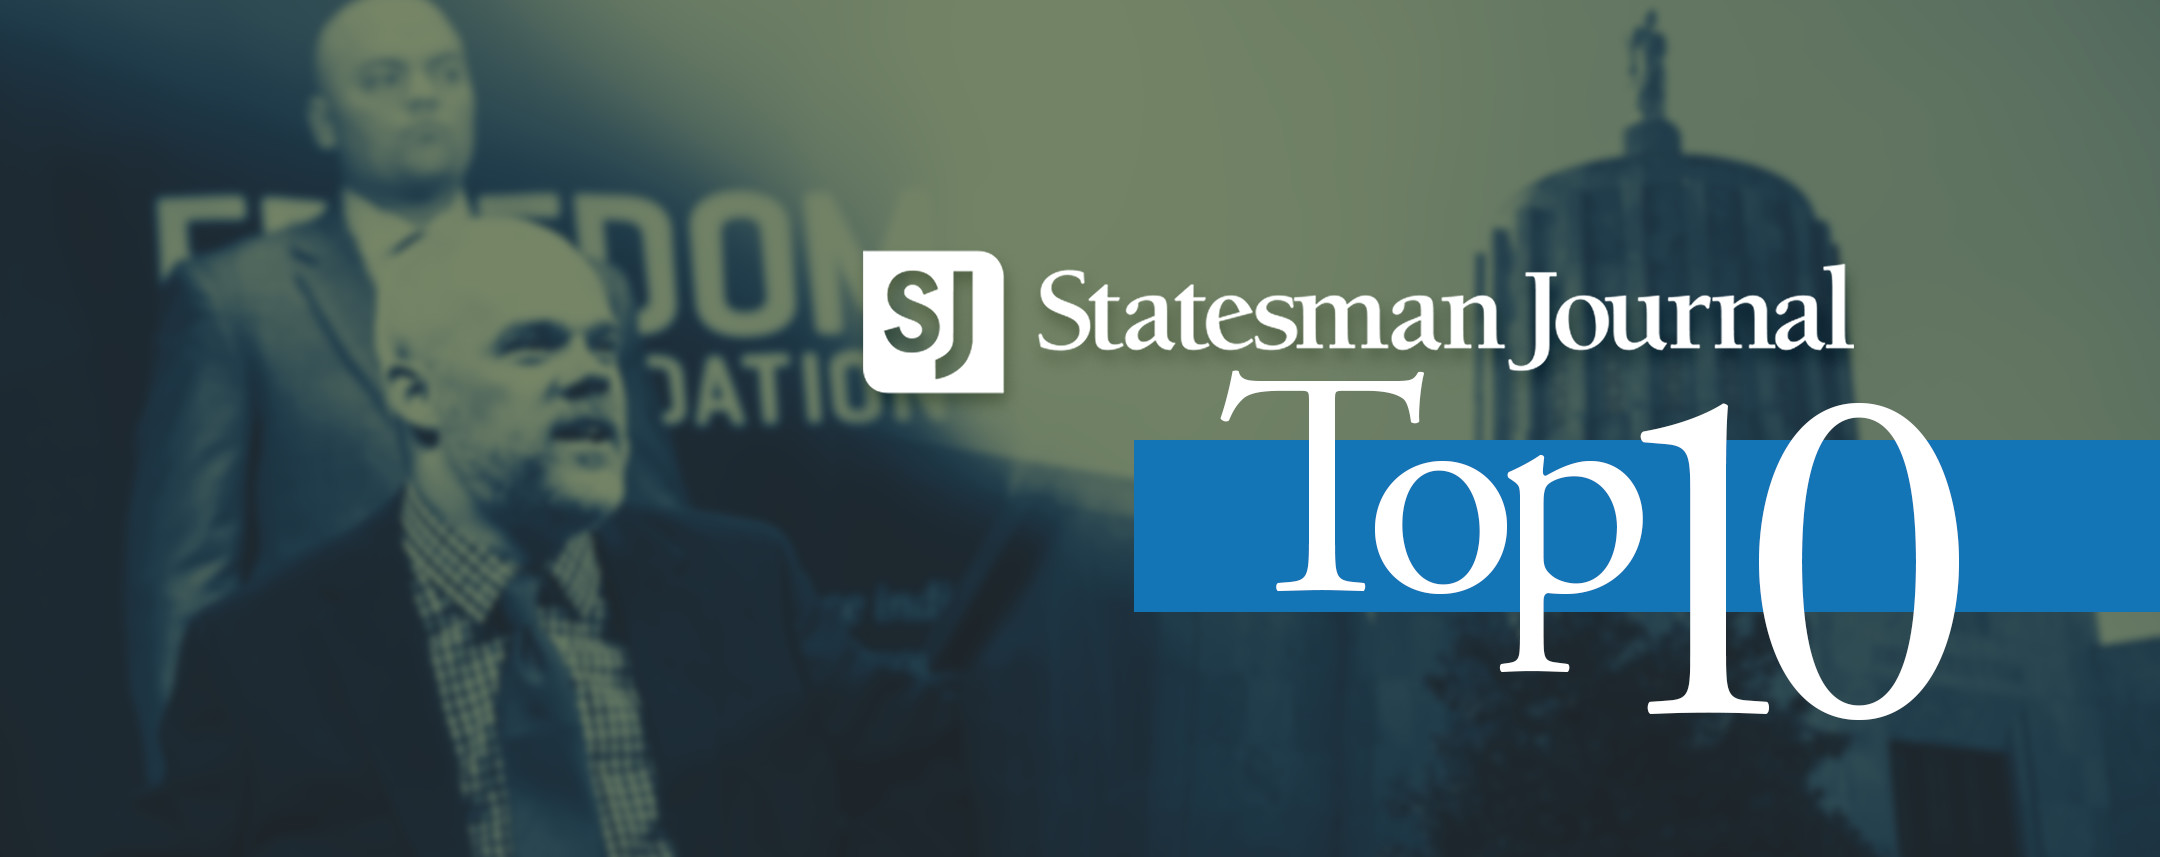 Statesman-Journal-top-10-FEATURED.jpg